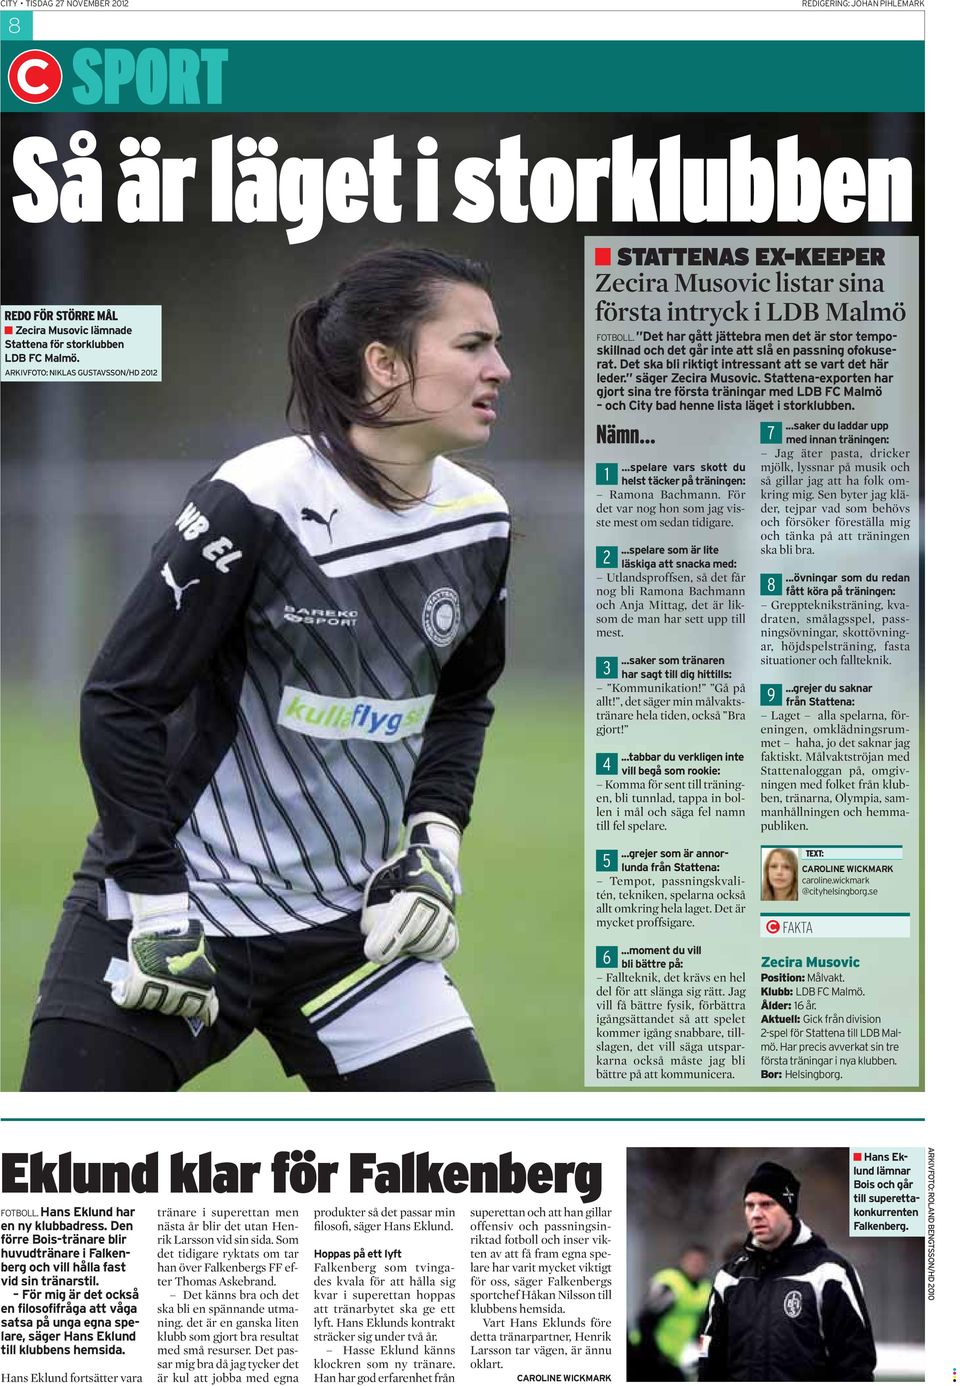 Det ska bli riktigt intressant att se vart det här leder. säger Zecira Musovic. Stattena-exporten har gjort sina tre första träningar med LDB FC Malmö och City bad henne lista läget i storklubben.